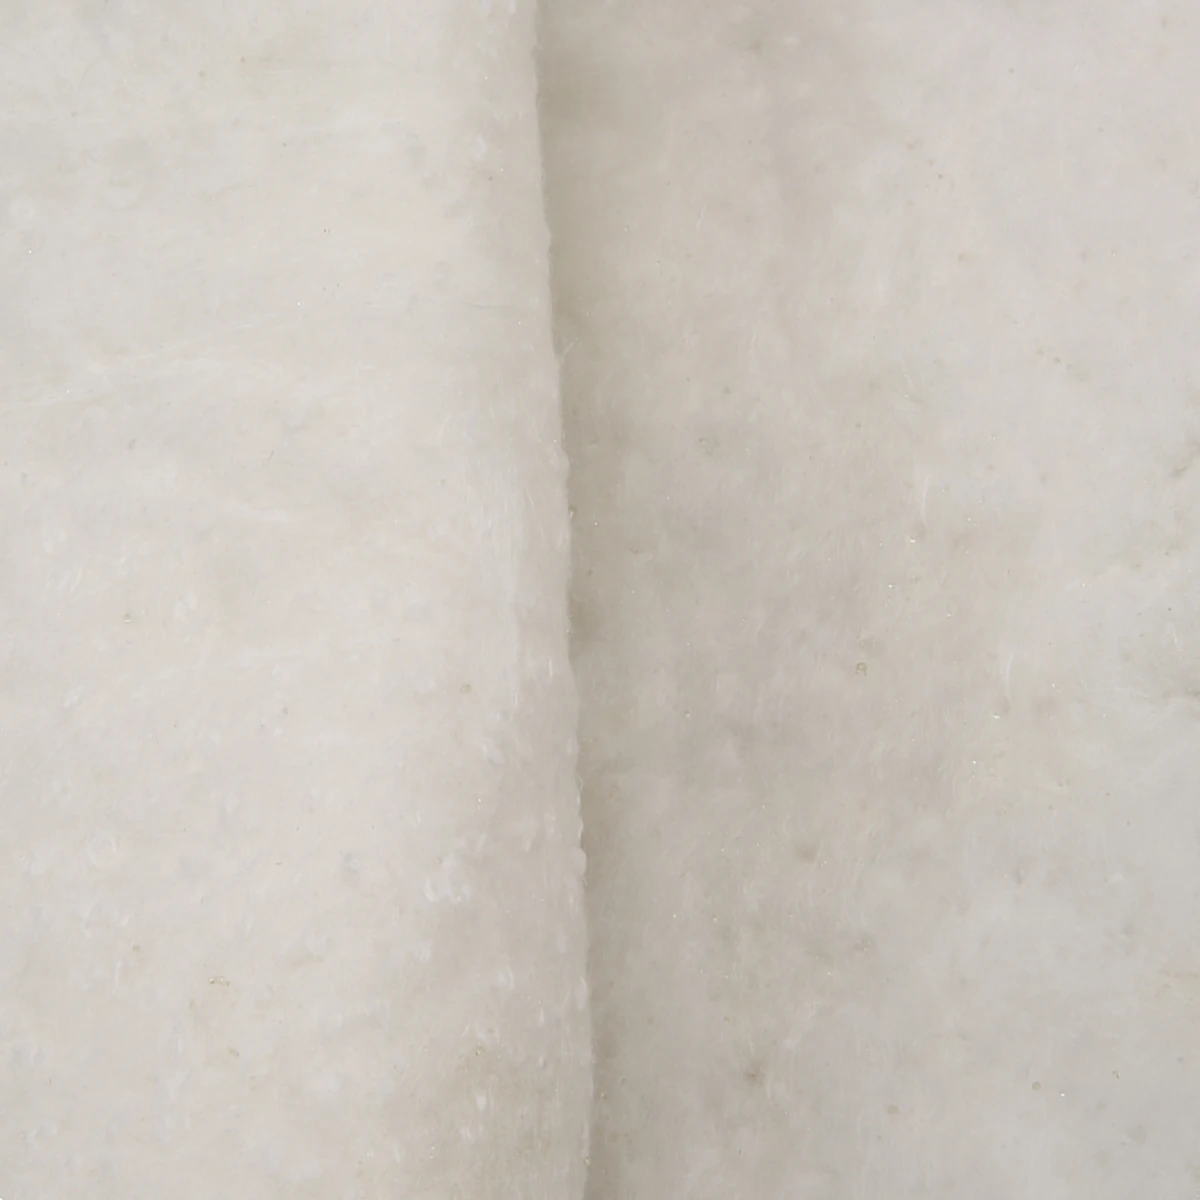 New 61cmx100cm White Ceramic Fiber Blanket High Temperature